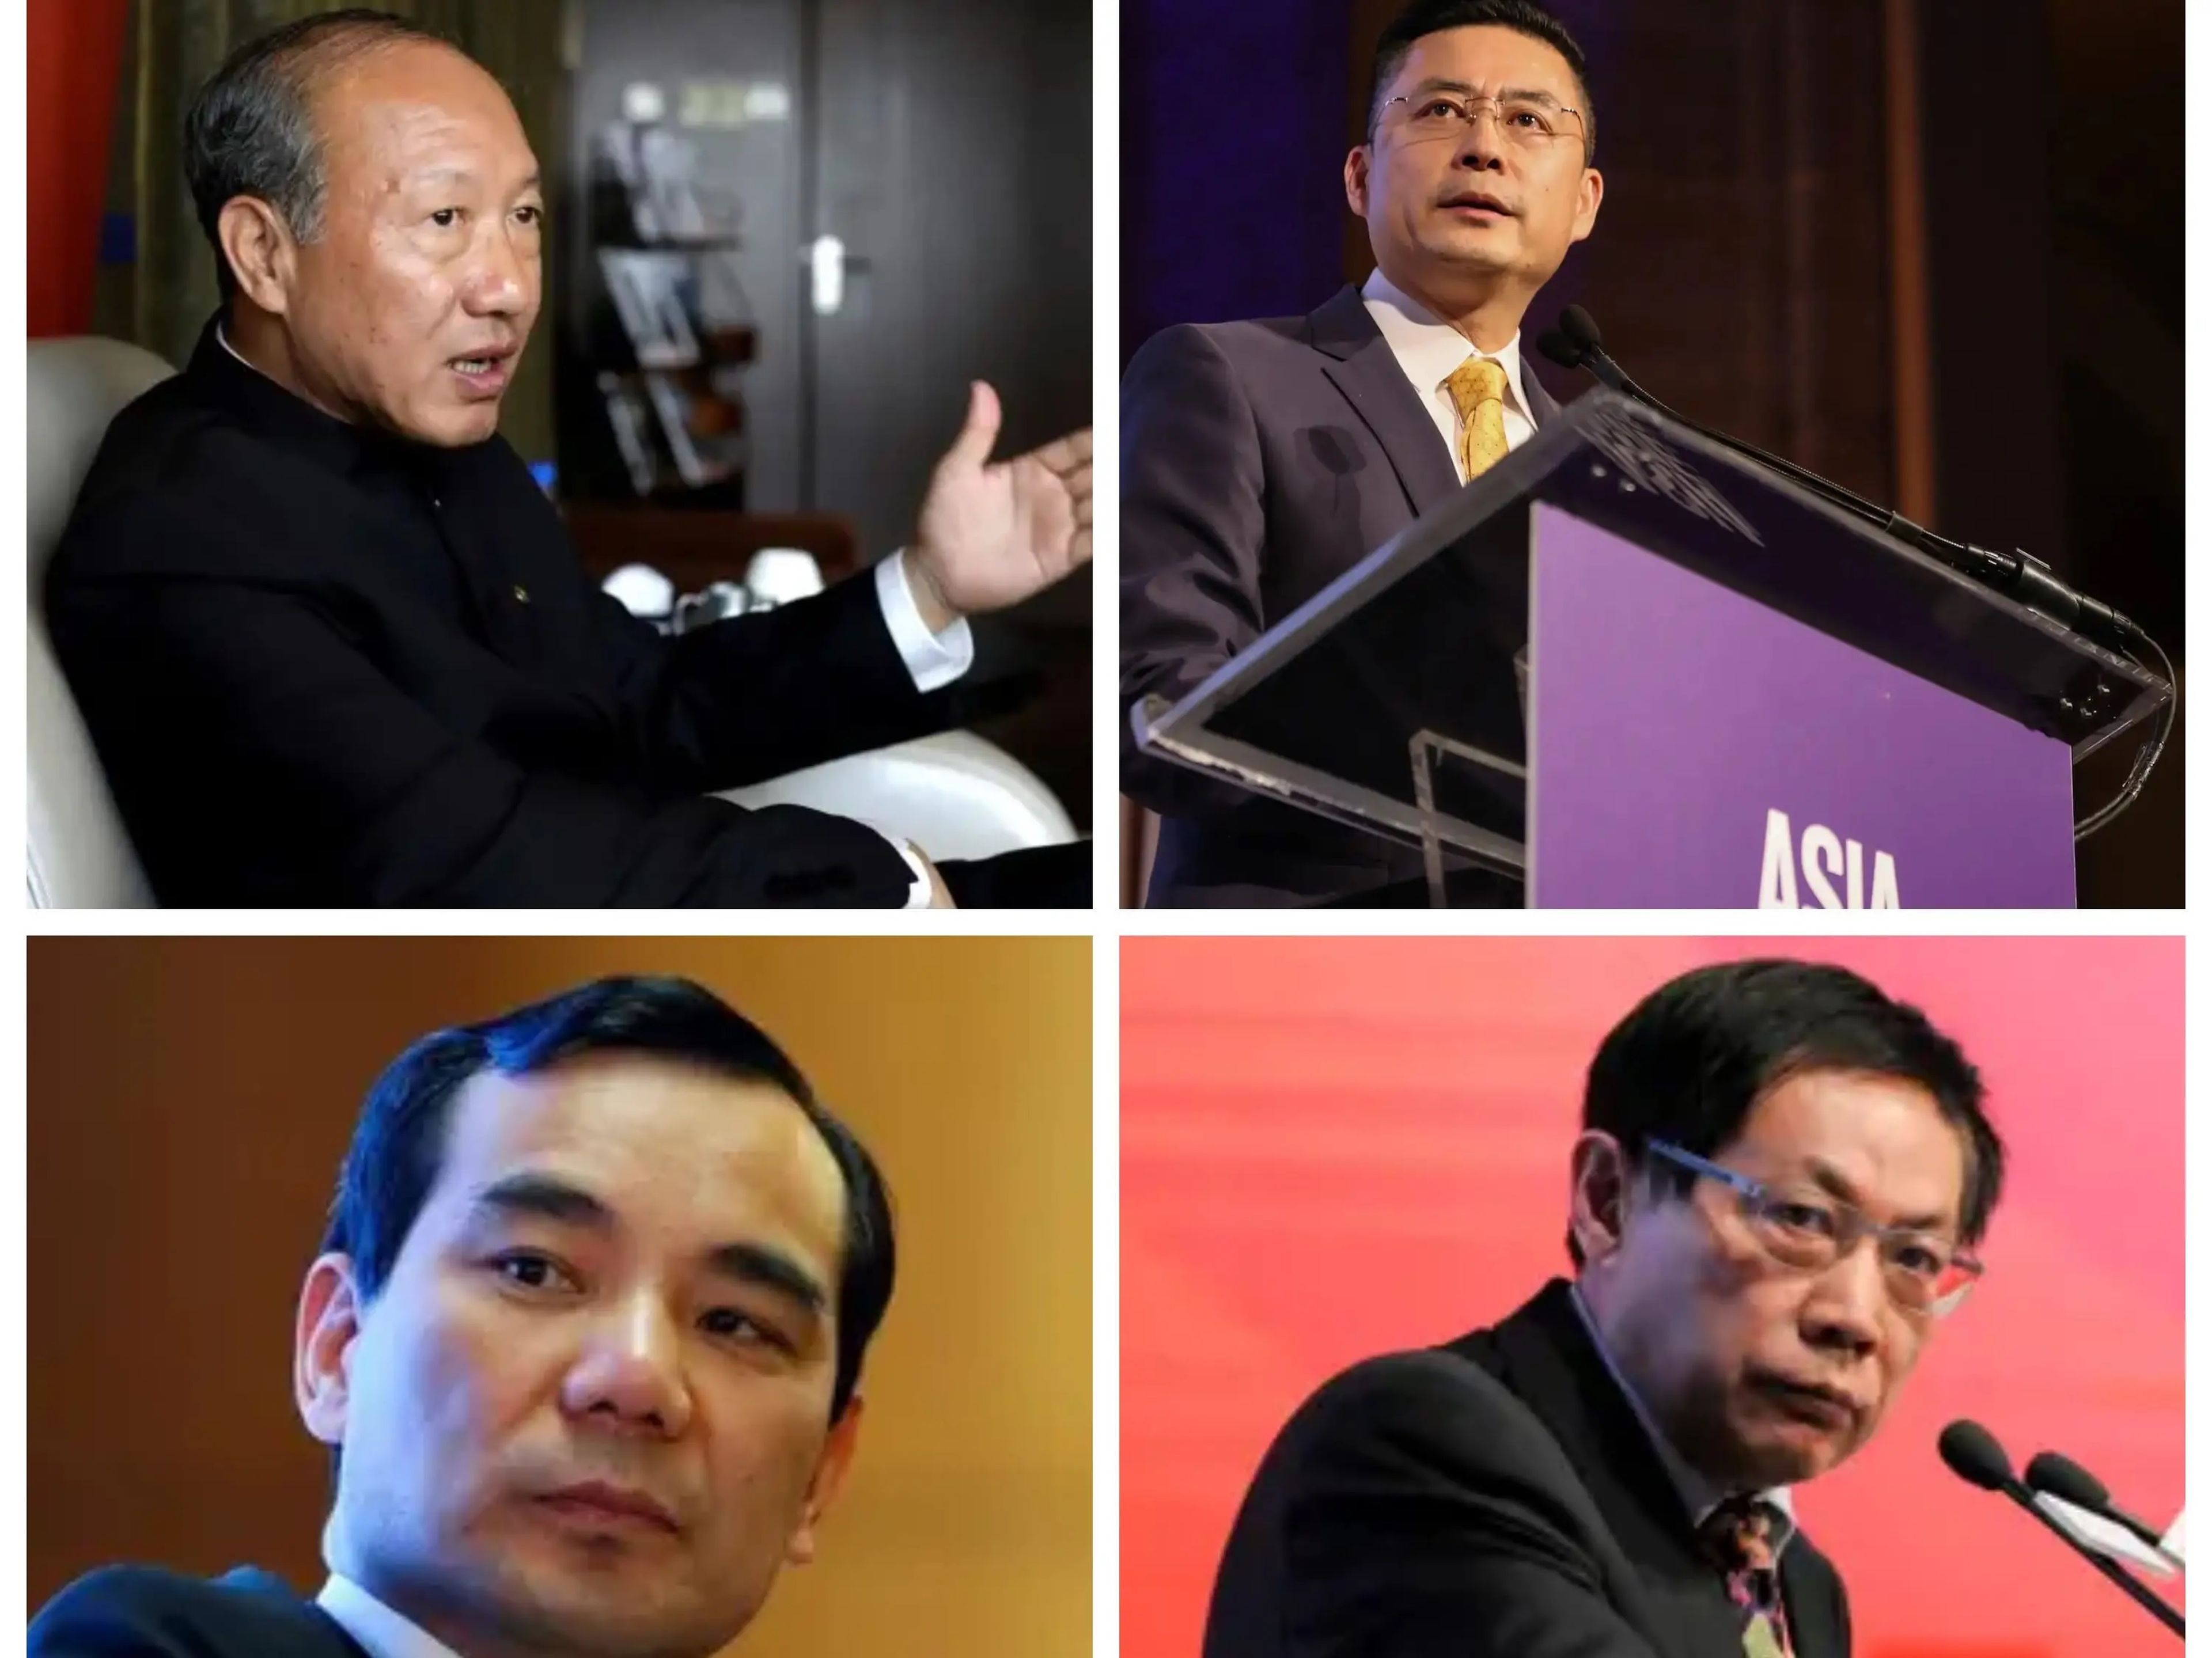 En los últimos años, las autoridades chinas han puesto en el punto de mira a varios altos ejecutivos de empresas, como Chen Feng y Adam Tan, de HNA, Wu Xiaohui, de Anbang, y Ren Zhiqiang, crítico con Xi Jinping.